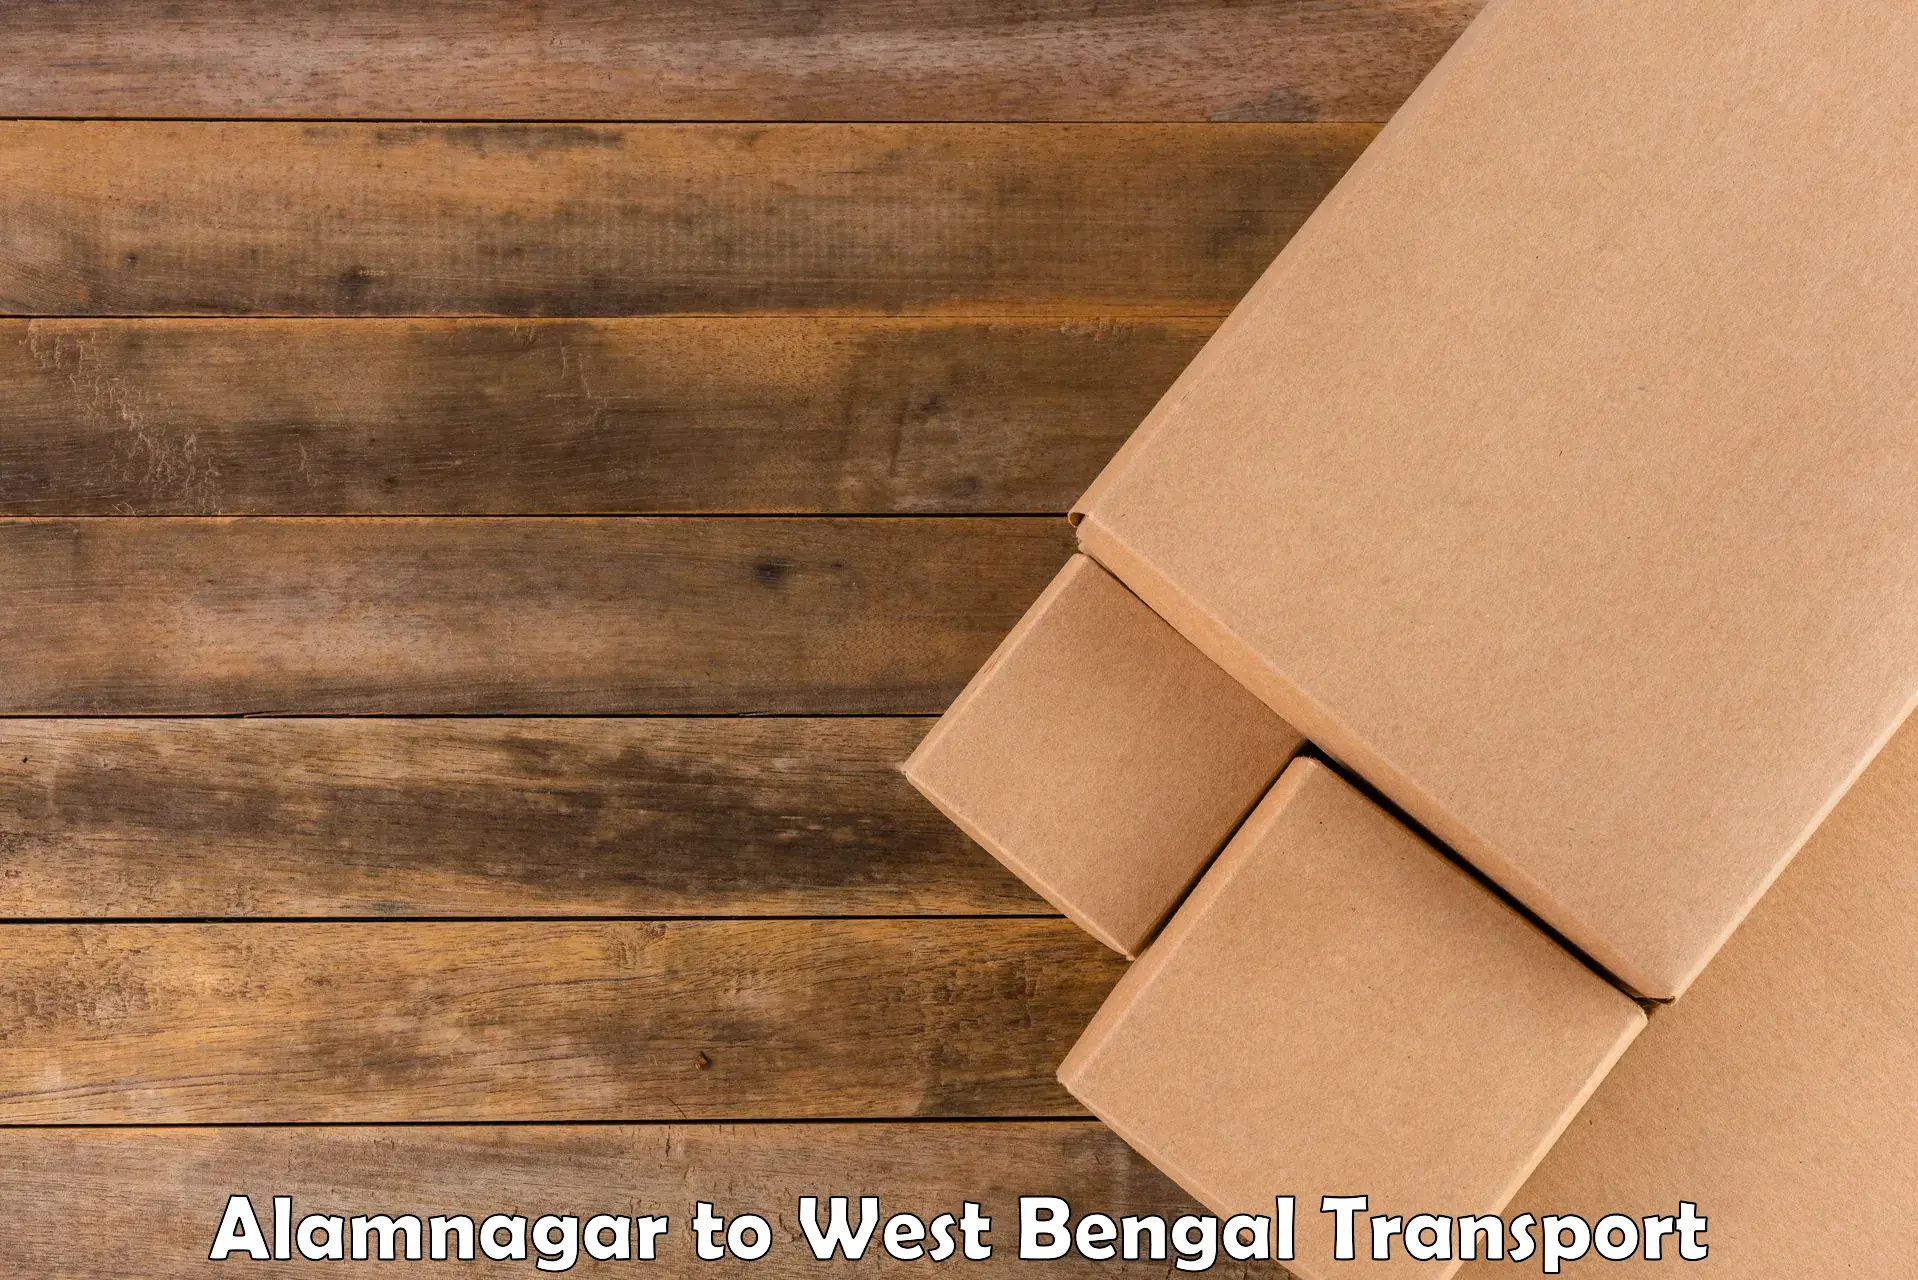 Shipping services Alamnagar to Barrackpore